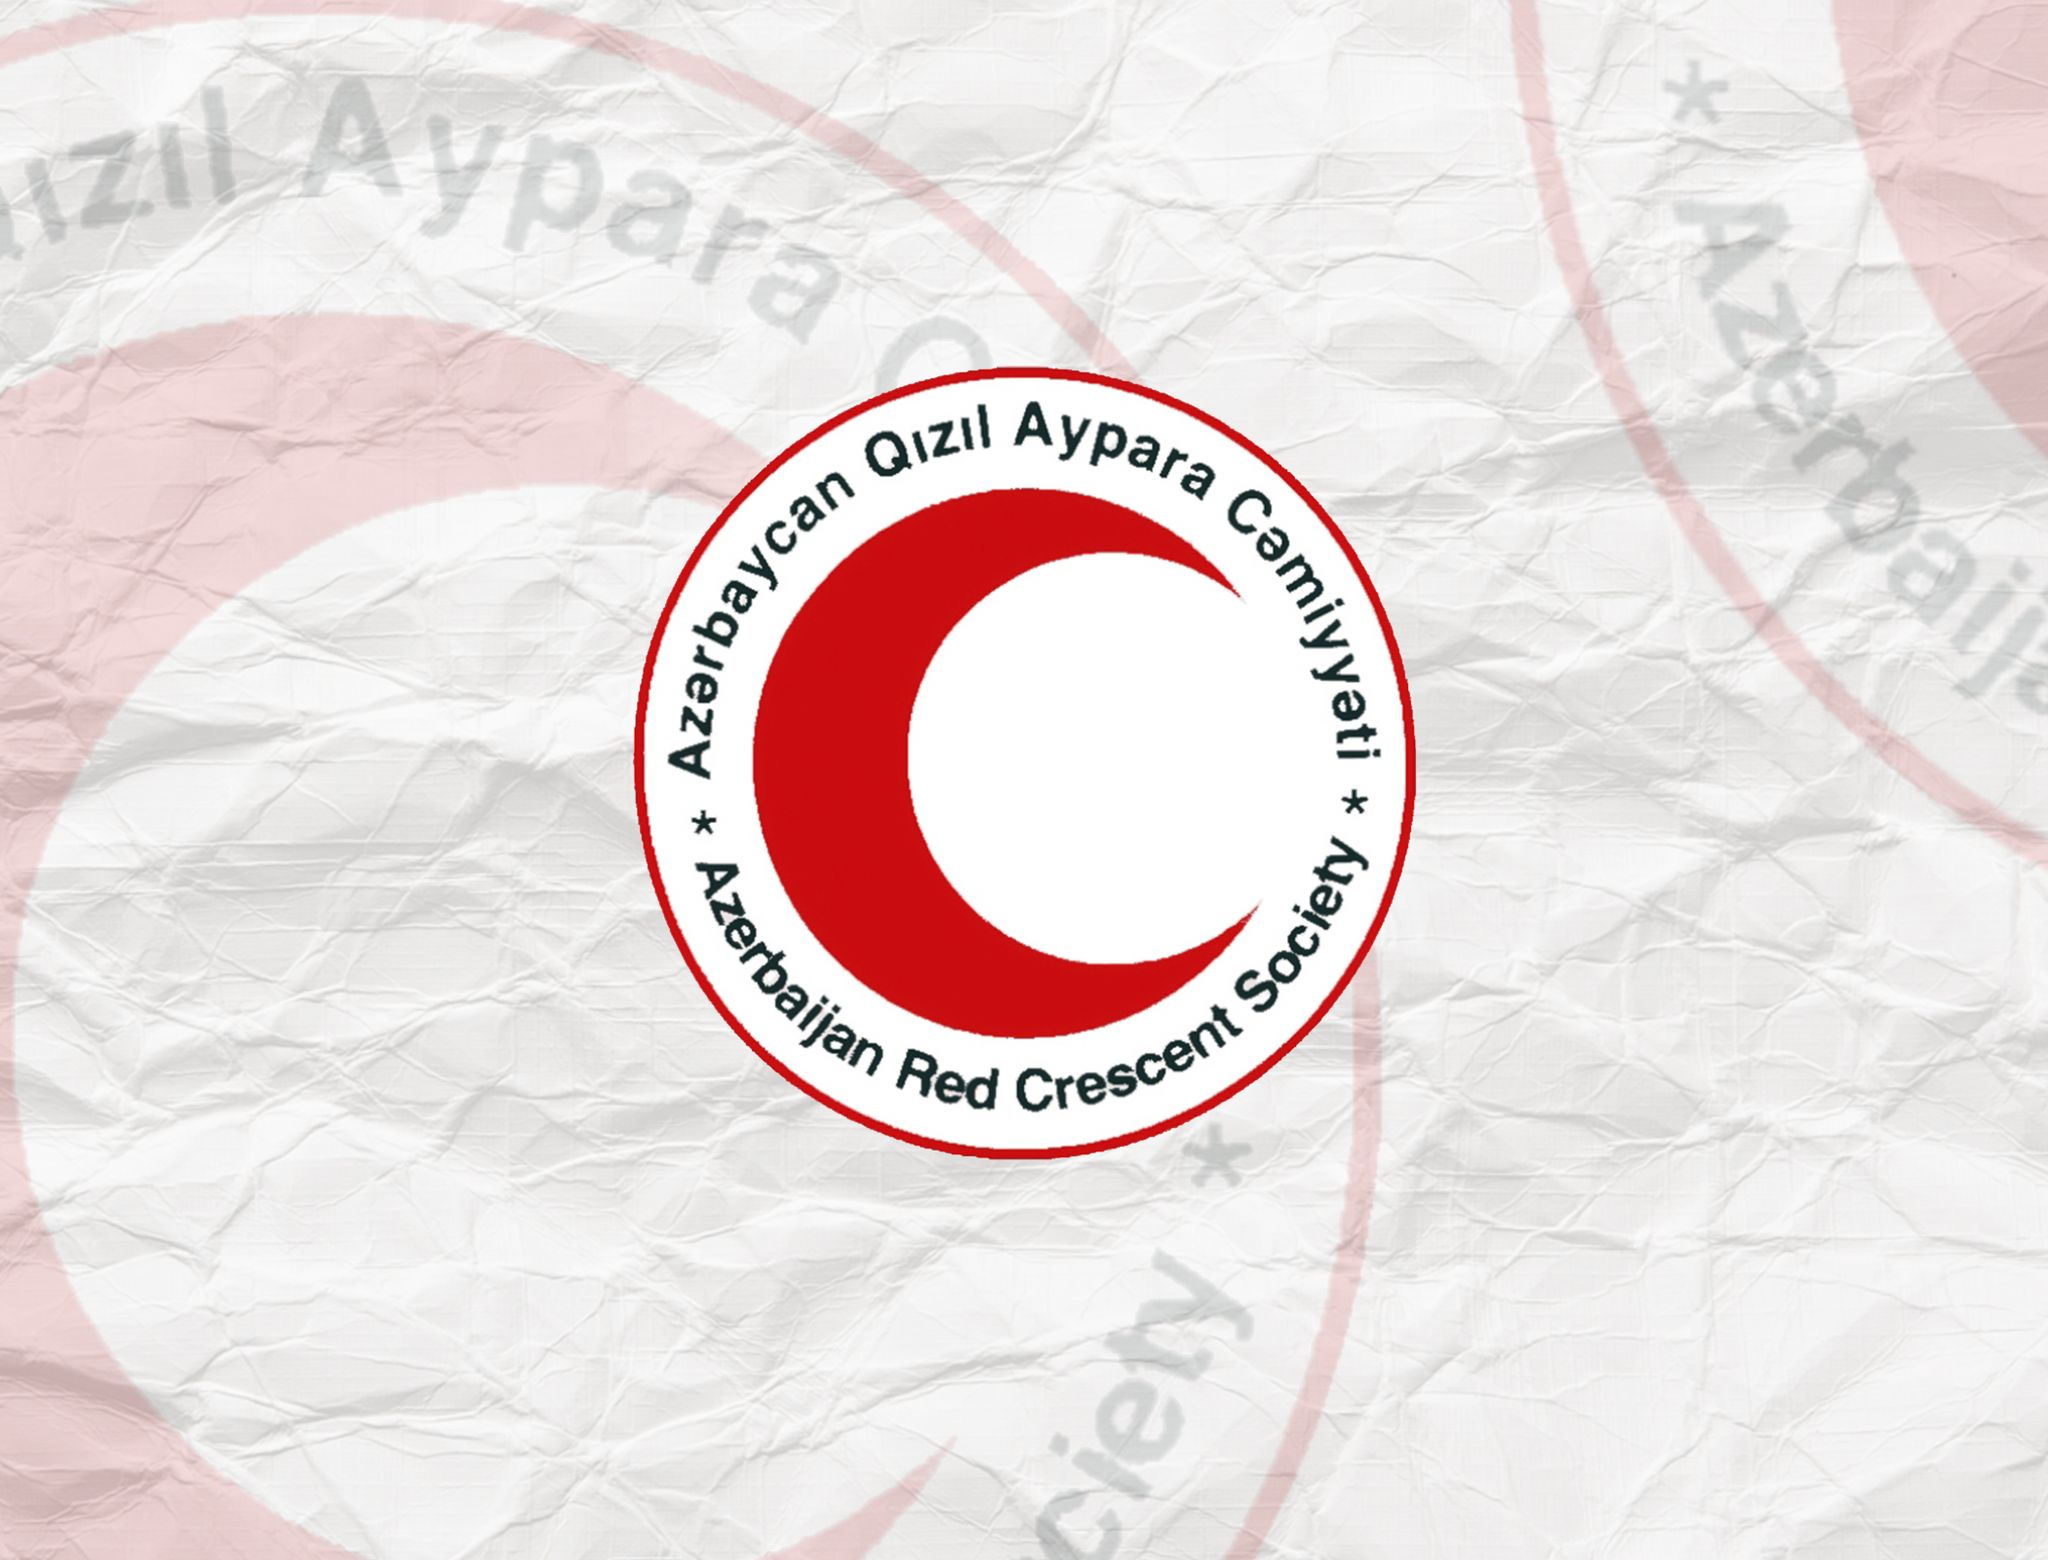 Азербайджанское Общество Красного Полумесяца ответило Армянскому Обществу Красного Креста